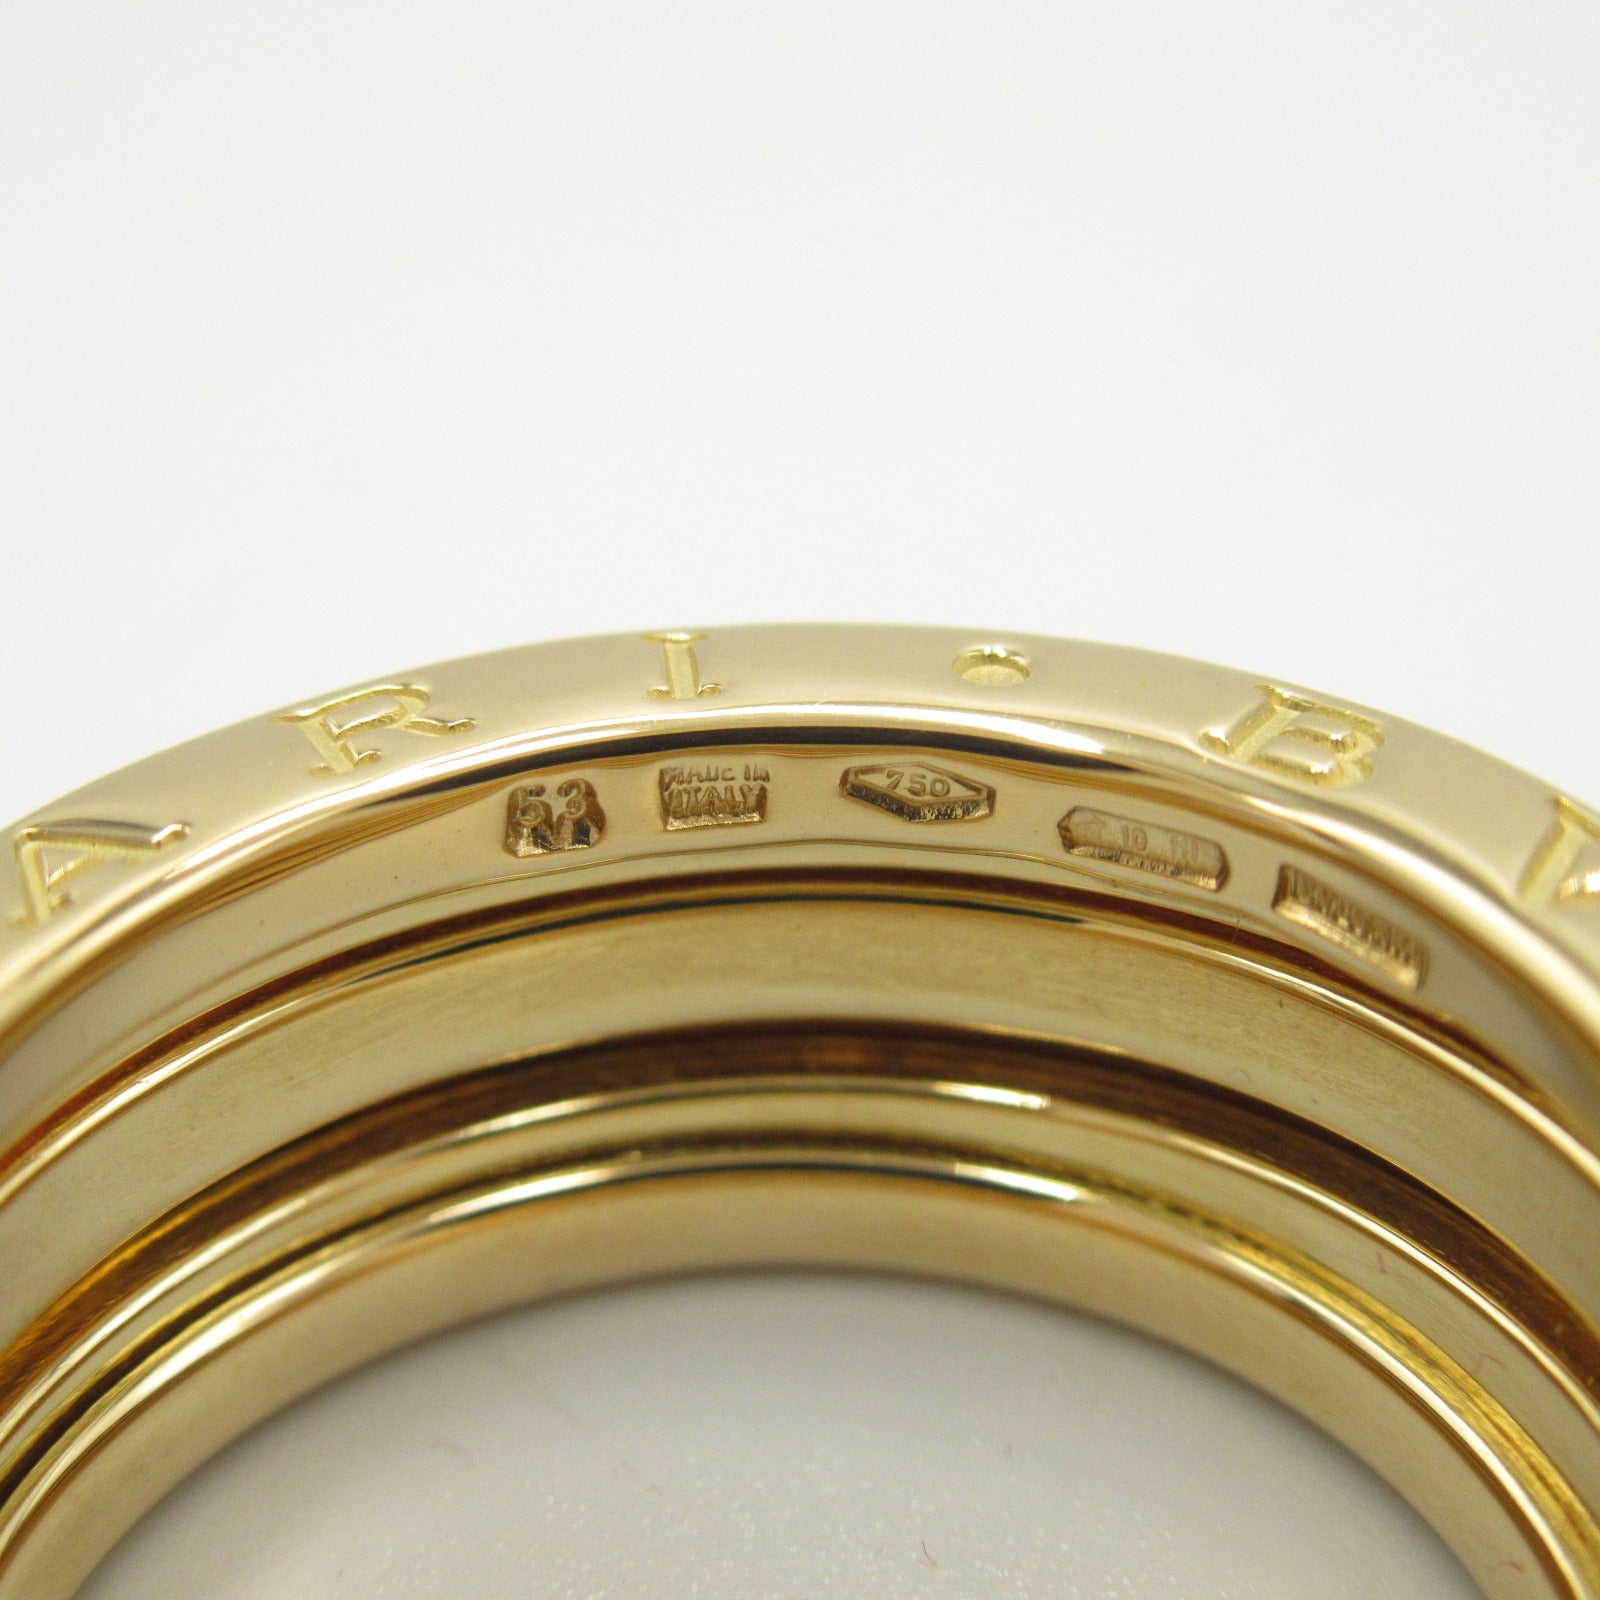 Bulgari BVLGARI B-zero1 Beezero One 3 Band Ring Ring Ring Ring Jewelry K18 (Yellow G)   G